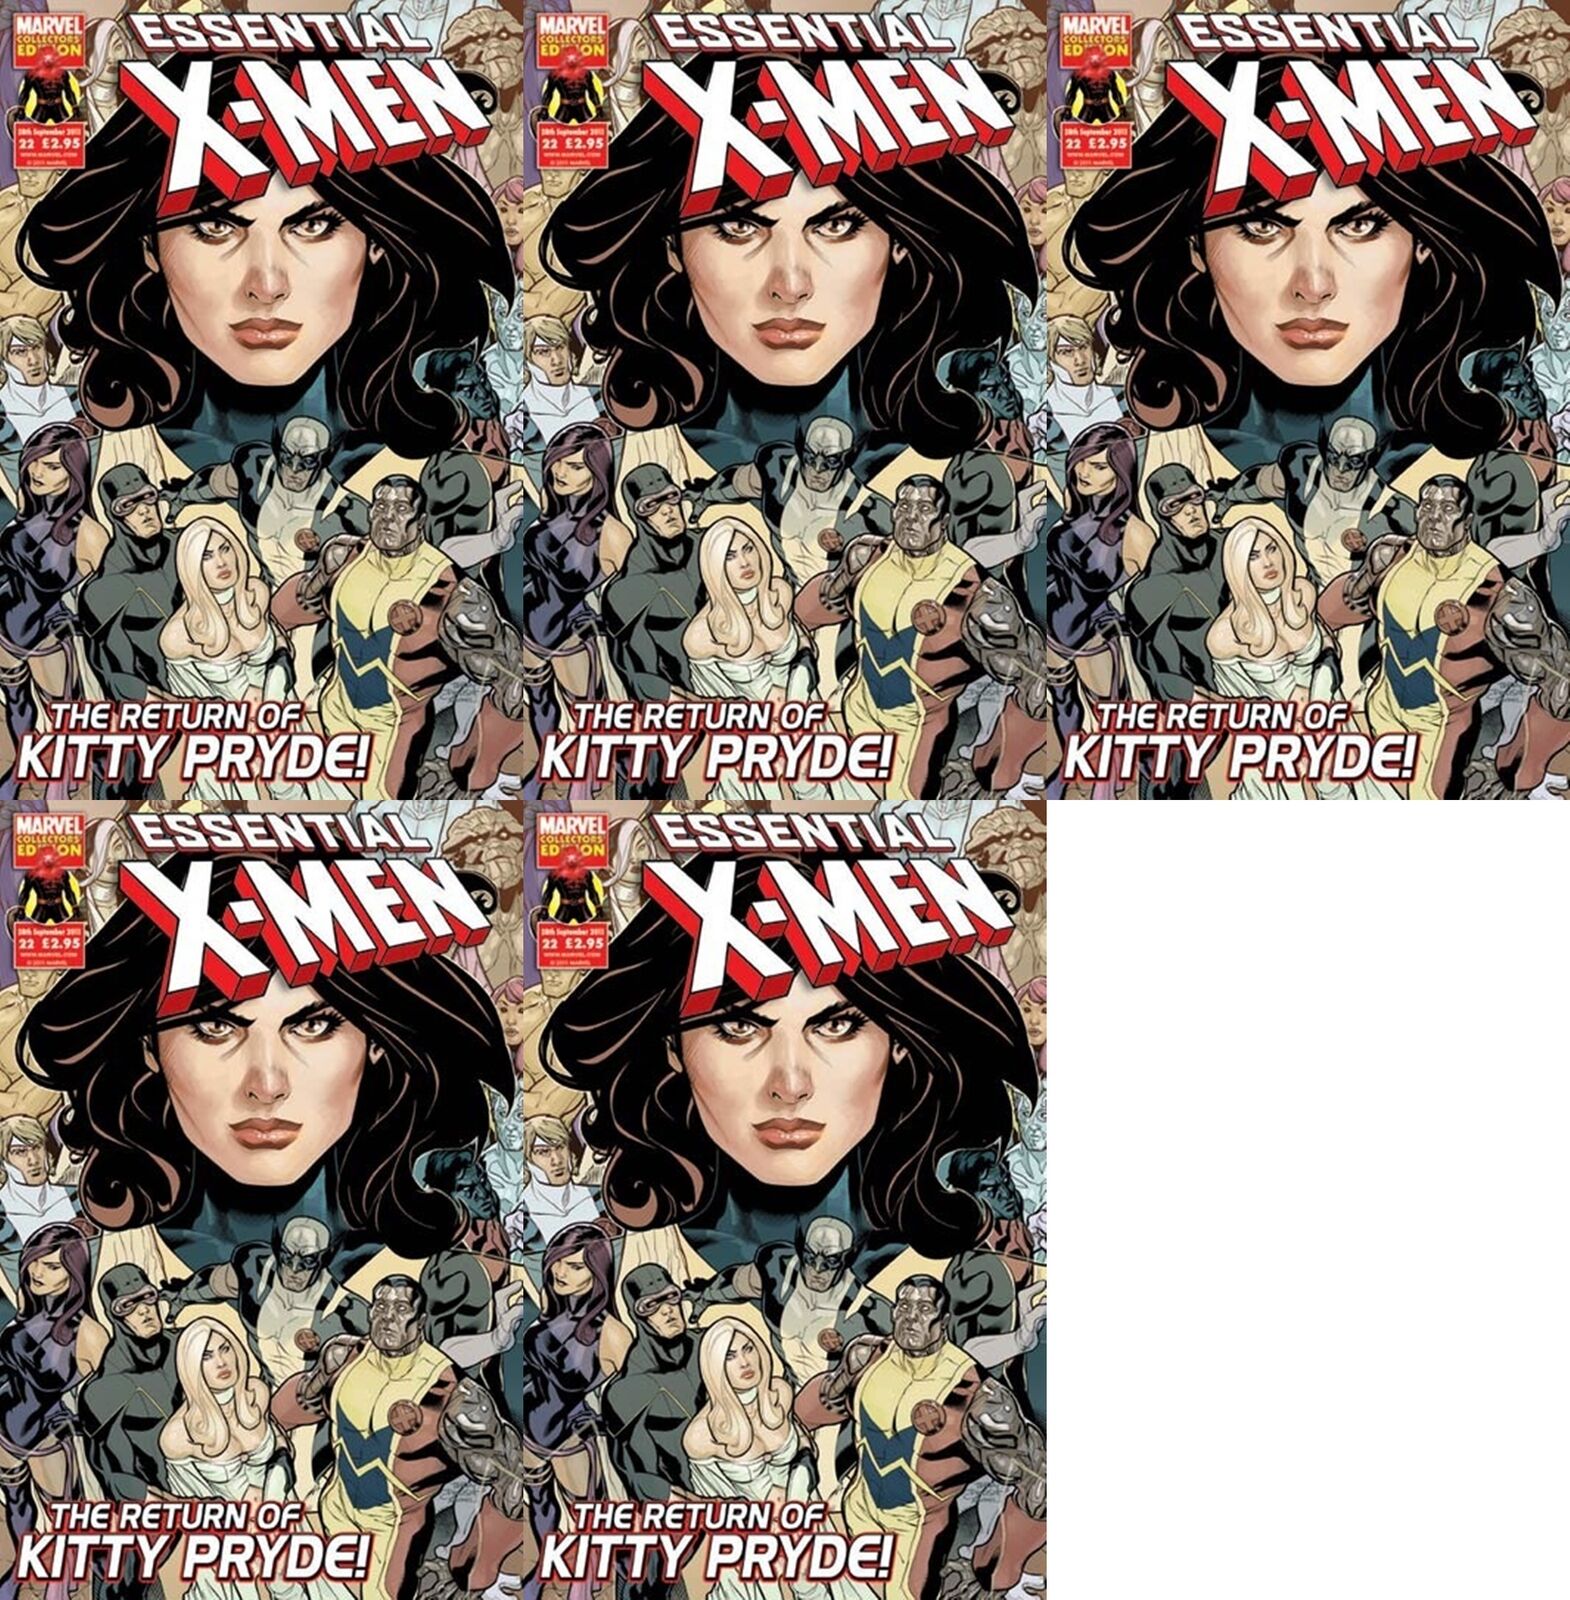 The Uncanny X-Men #522 Volume 1 (1981-2011) Marvel Comics - 5 Comics